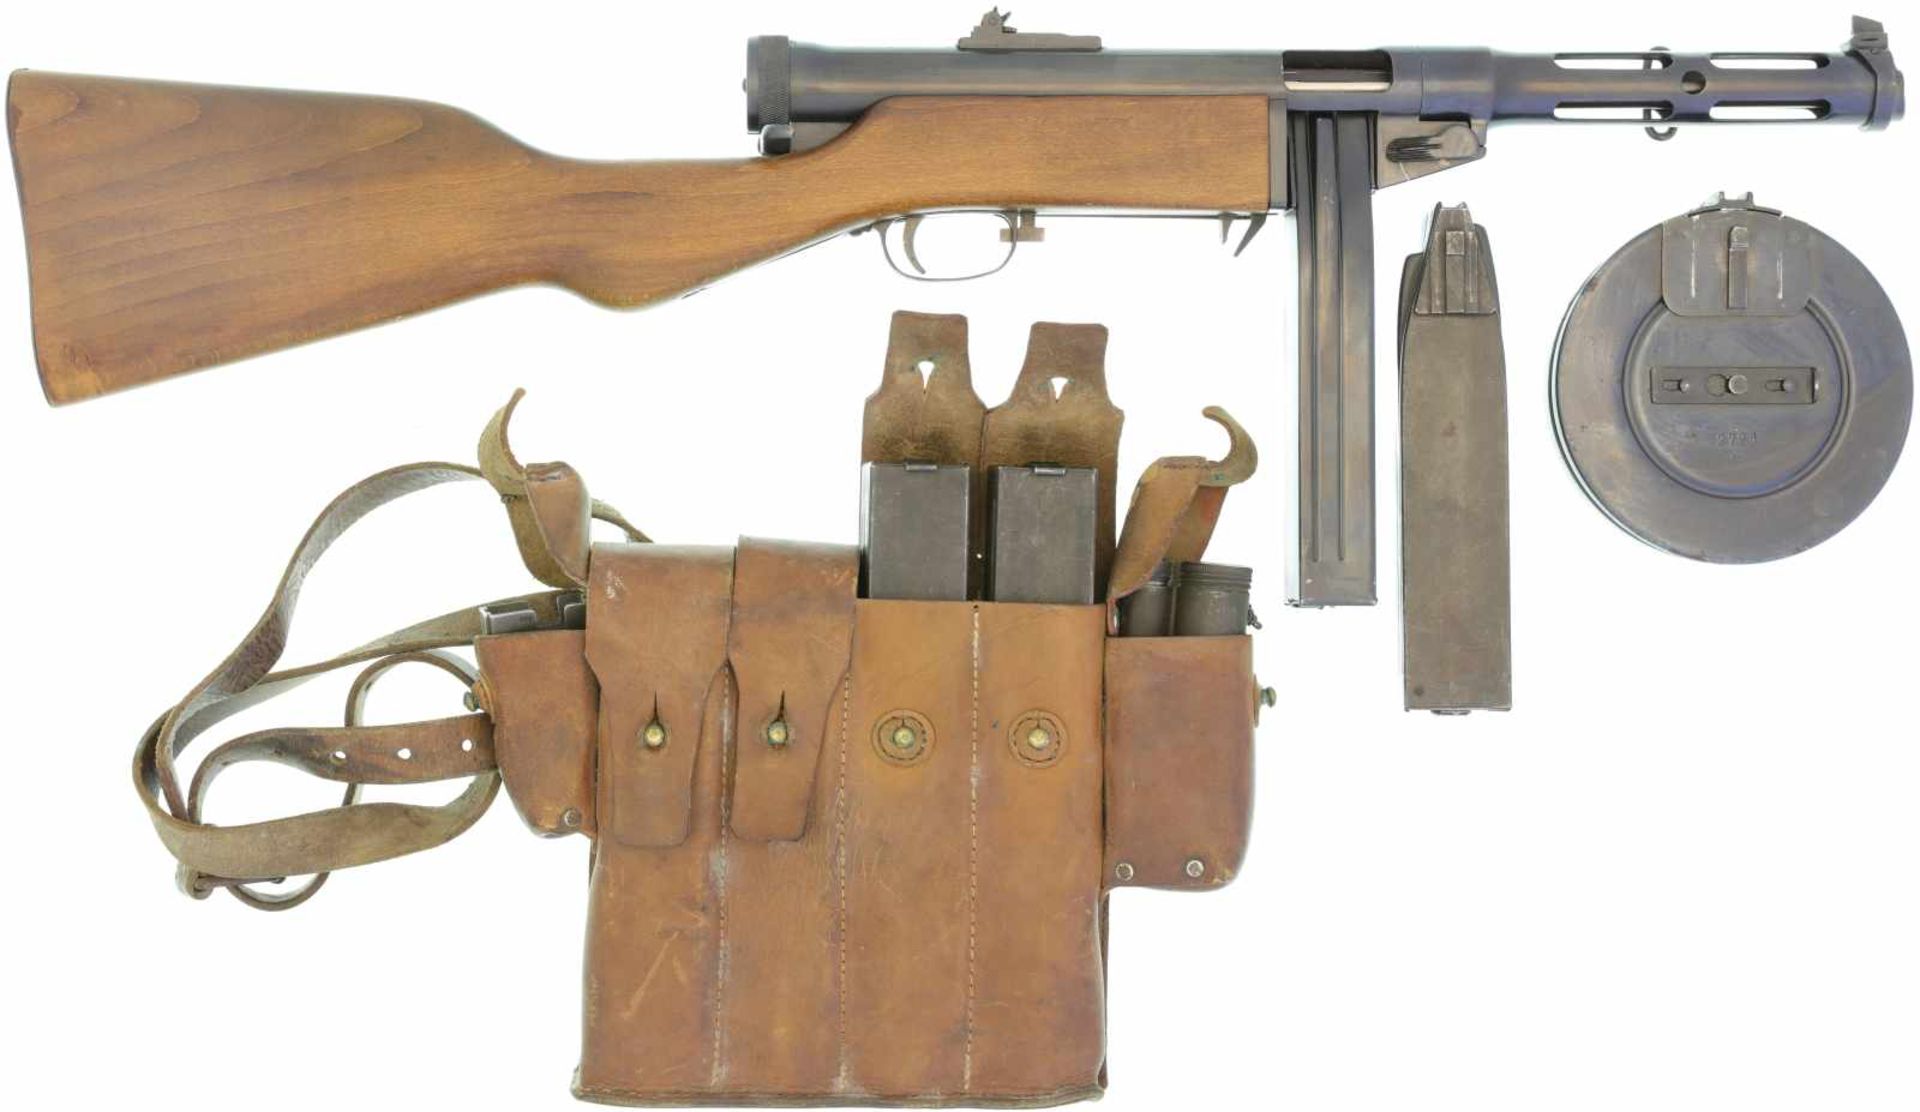 Maschinenpistole, Suomi Husqvarna, MP Mod. 1937/39, Kal. 9mmP LL 220mm, TL 775mm. Verschluss